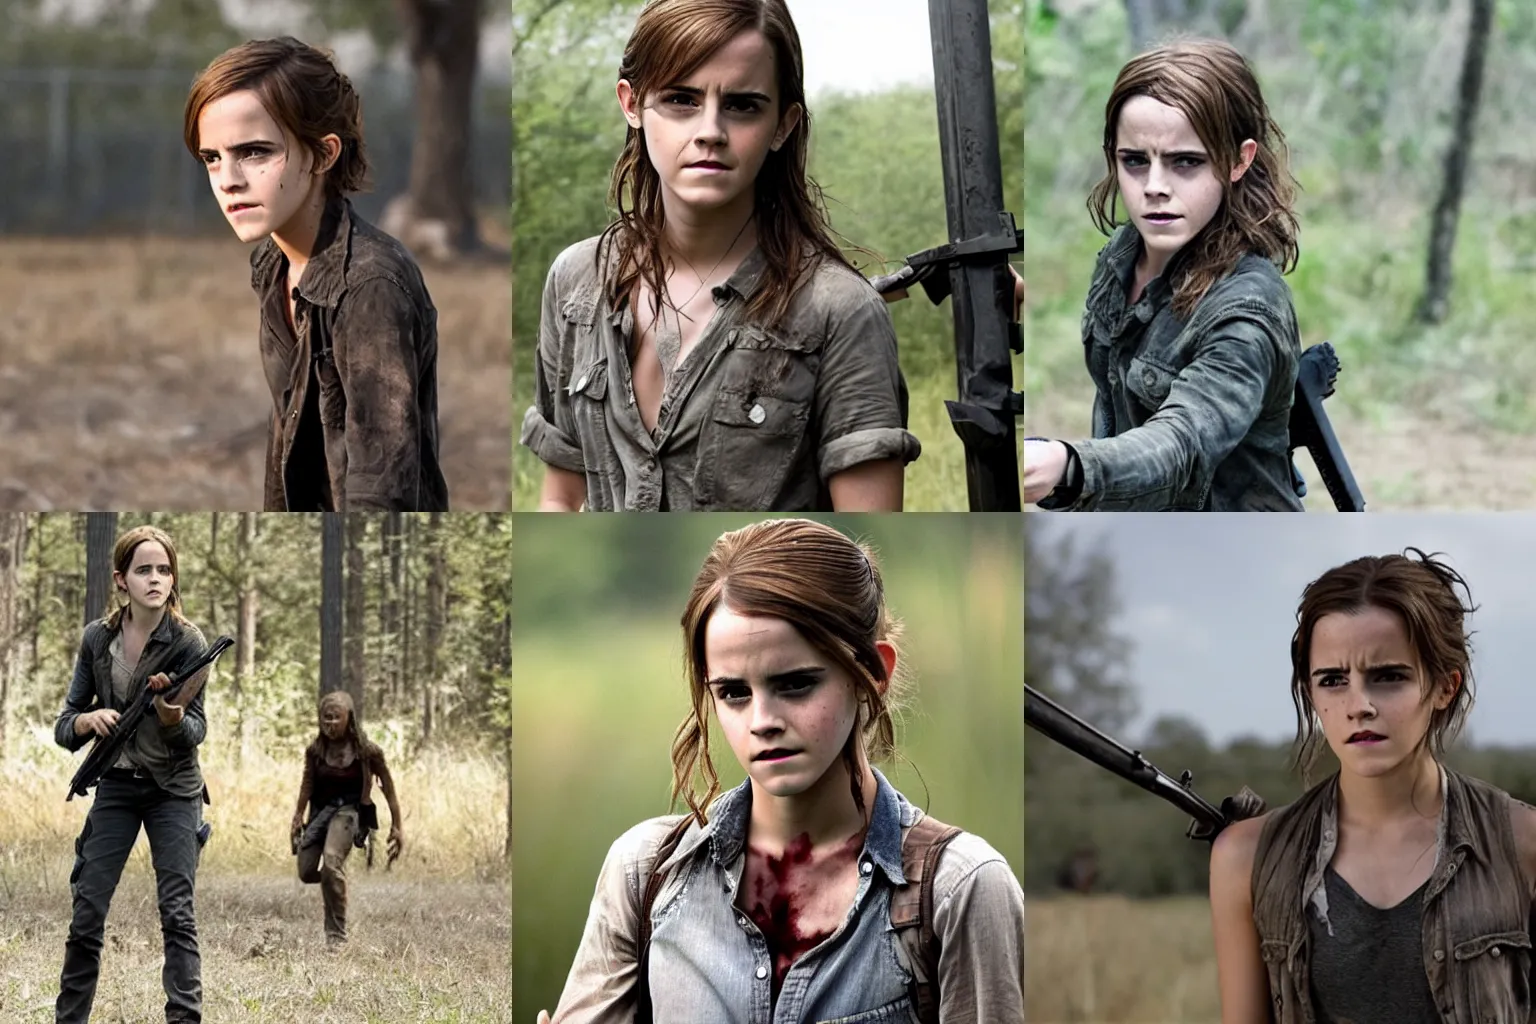 Prompt: Still of Emma Watson in Walking Dead